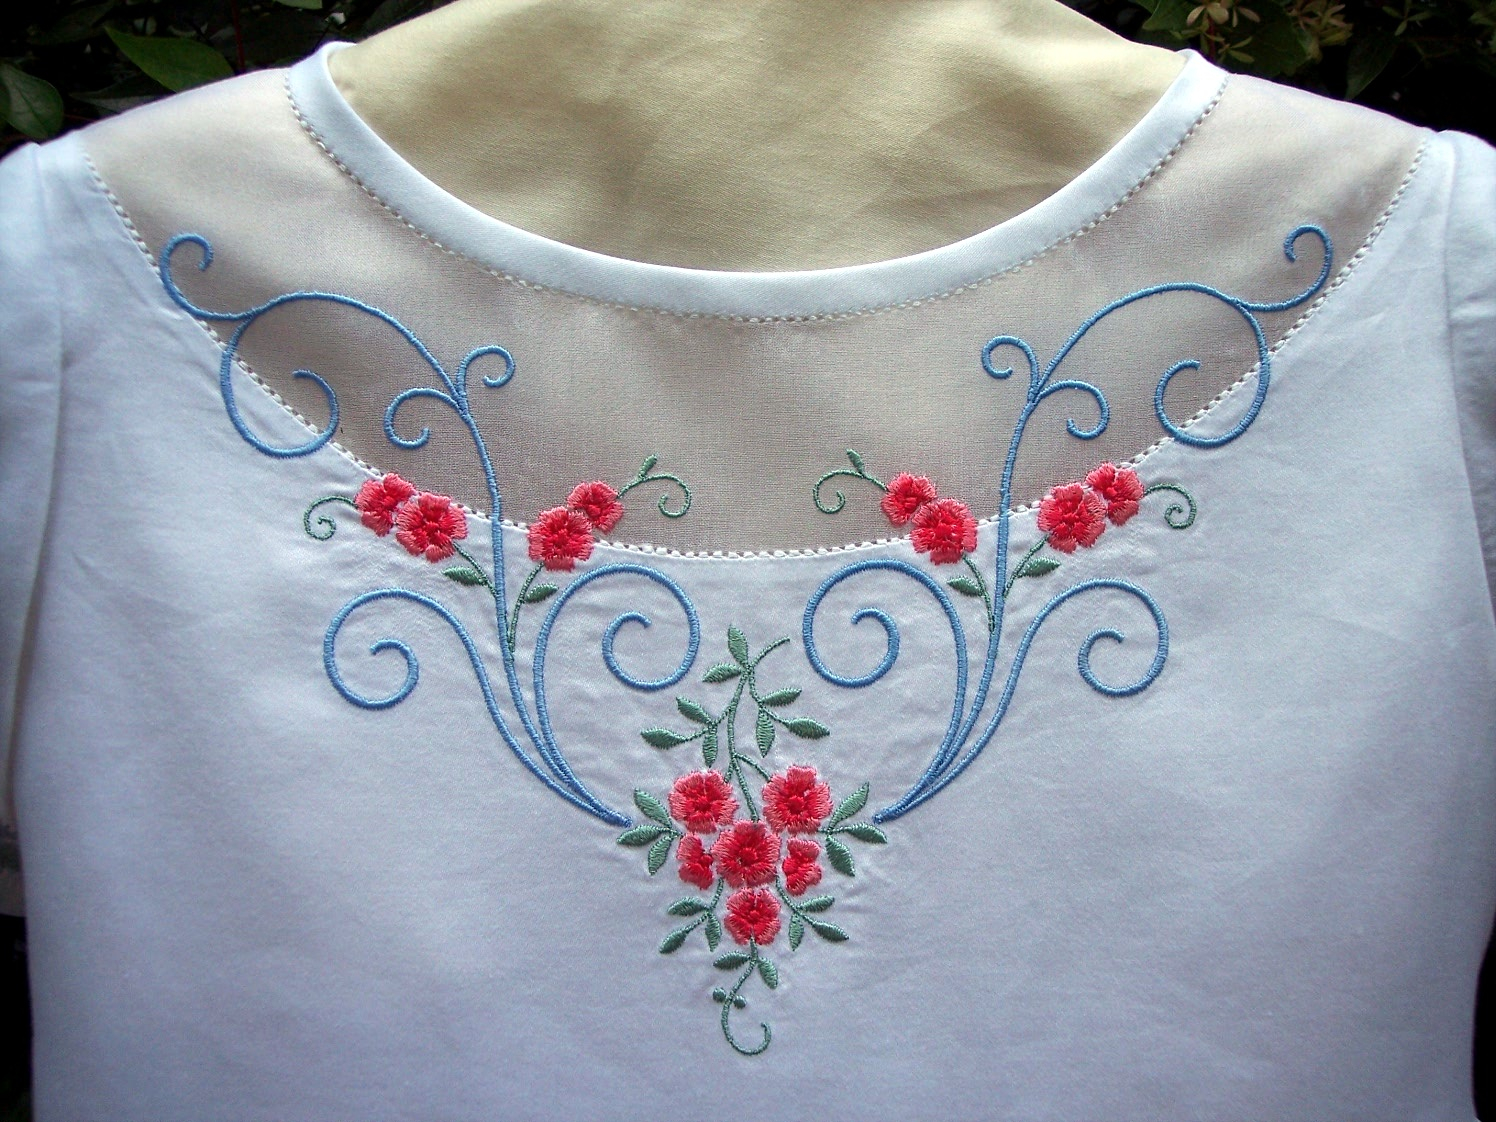 Embroidery Dress Patterns A Very Versatile Machine Embroidery Design Susanstewartdesigns